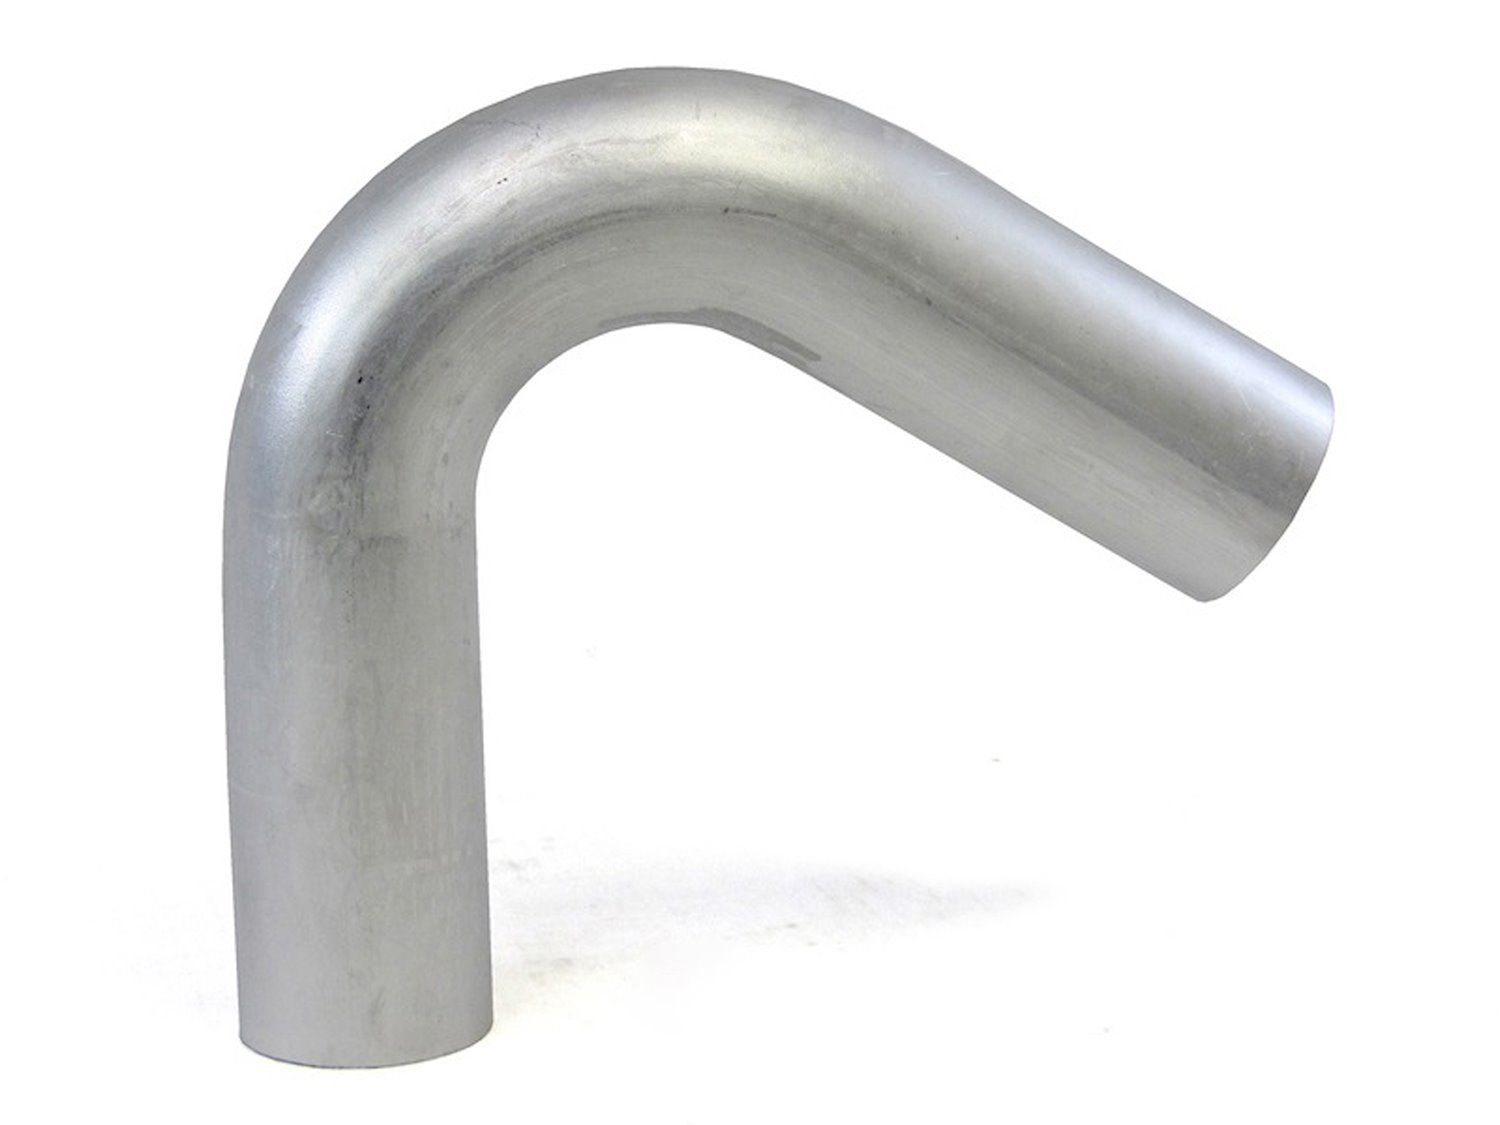 AT120-250-CLR-25 Aluminum Elbow Tube, 6061 Aluminum, 120-Degree Bend Elbow Tubing, 2-1/2 in. OD, Tight Radius, 2-1/2 in. CLR